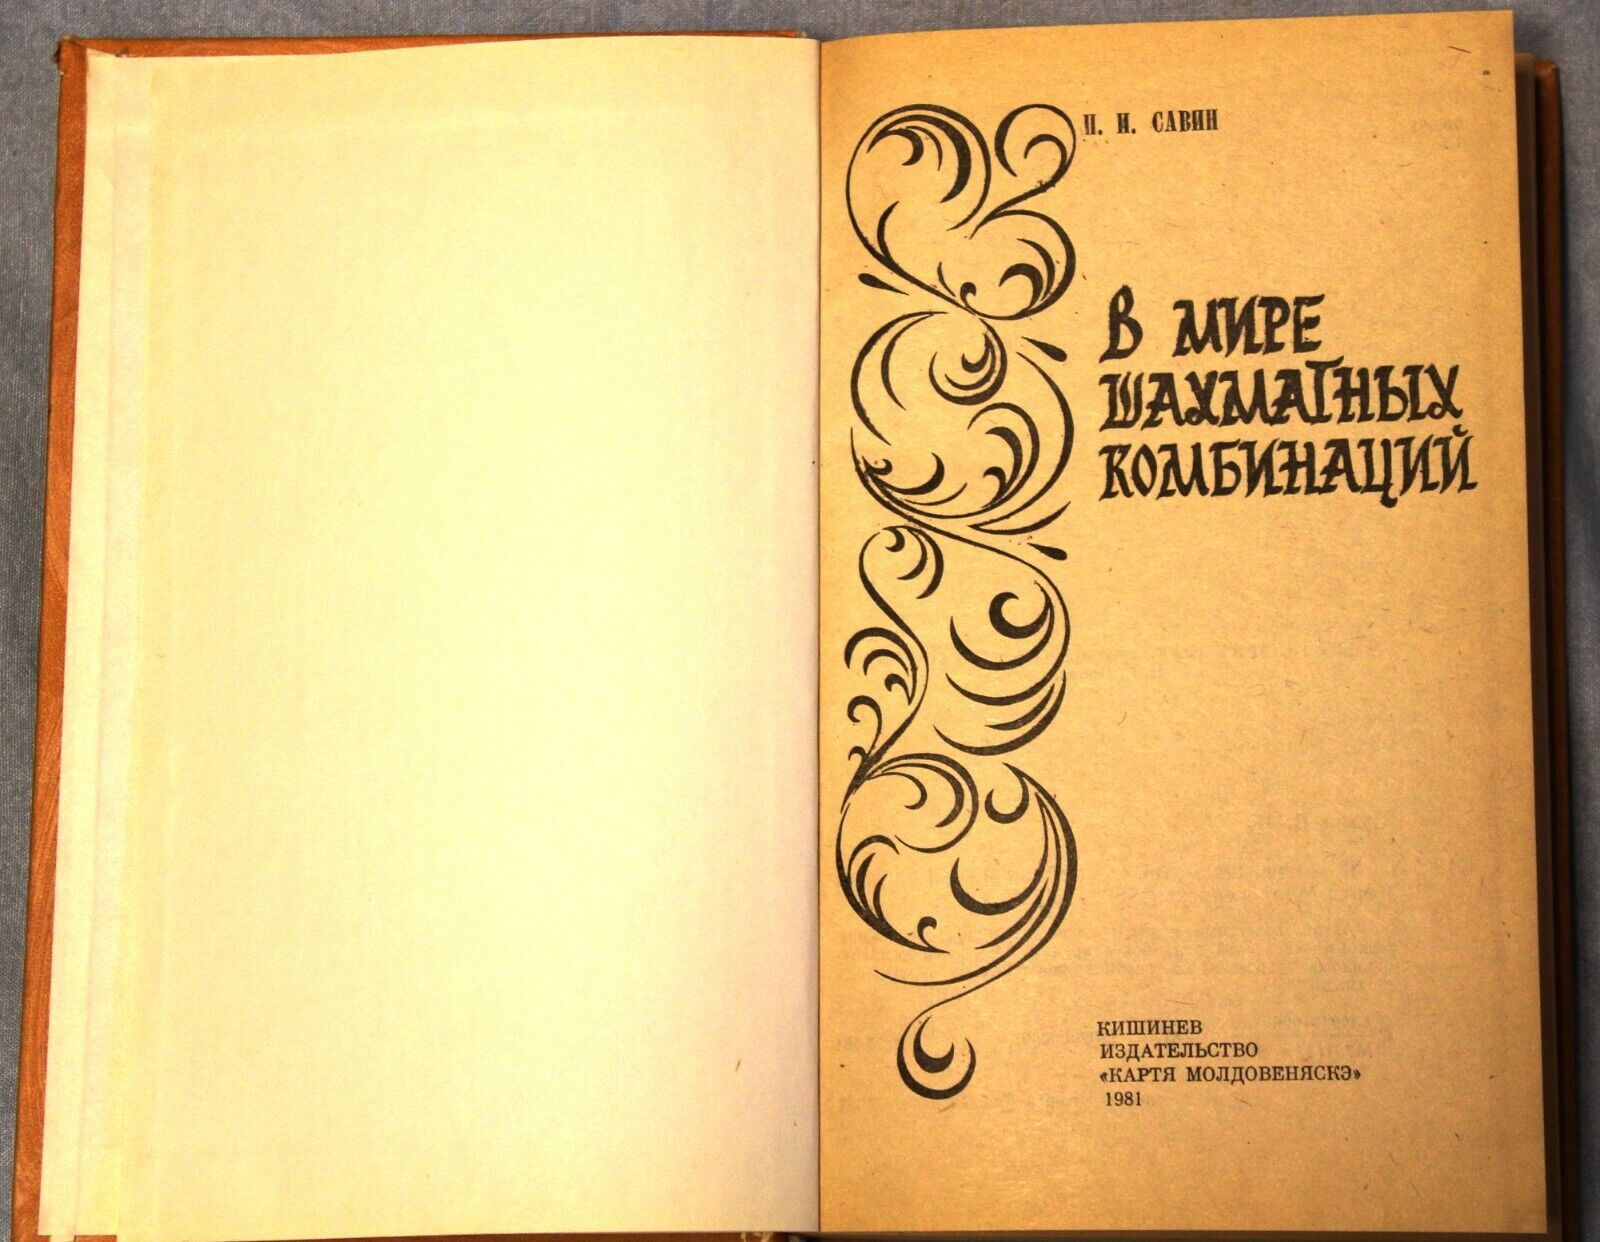 11708.Soviet Chess Book.Rare hard binding.World of chess combinations.Kishinev,1981